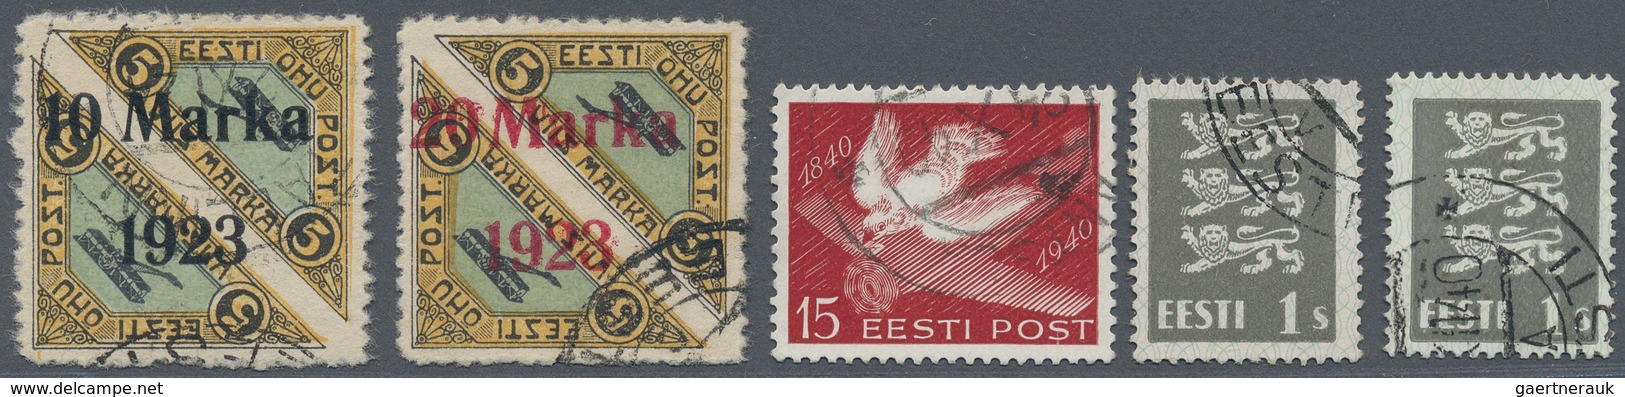 26284 Estland: 1801/2003, postgeschichtliche Sammlung mit über 170 Briefe/Ganzsachen/Paketkarten, etc. sow